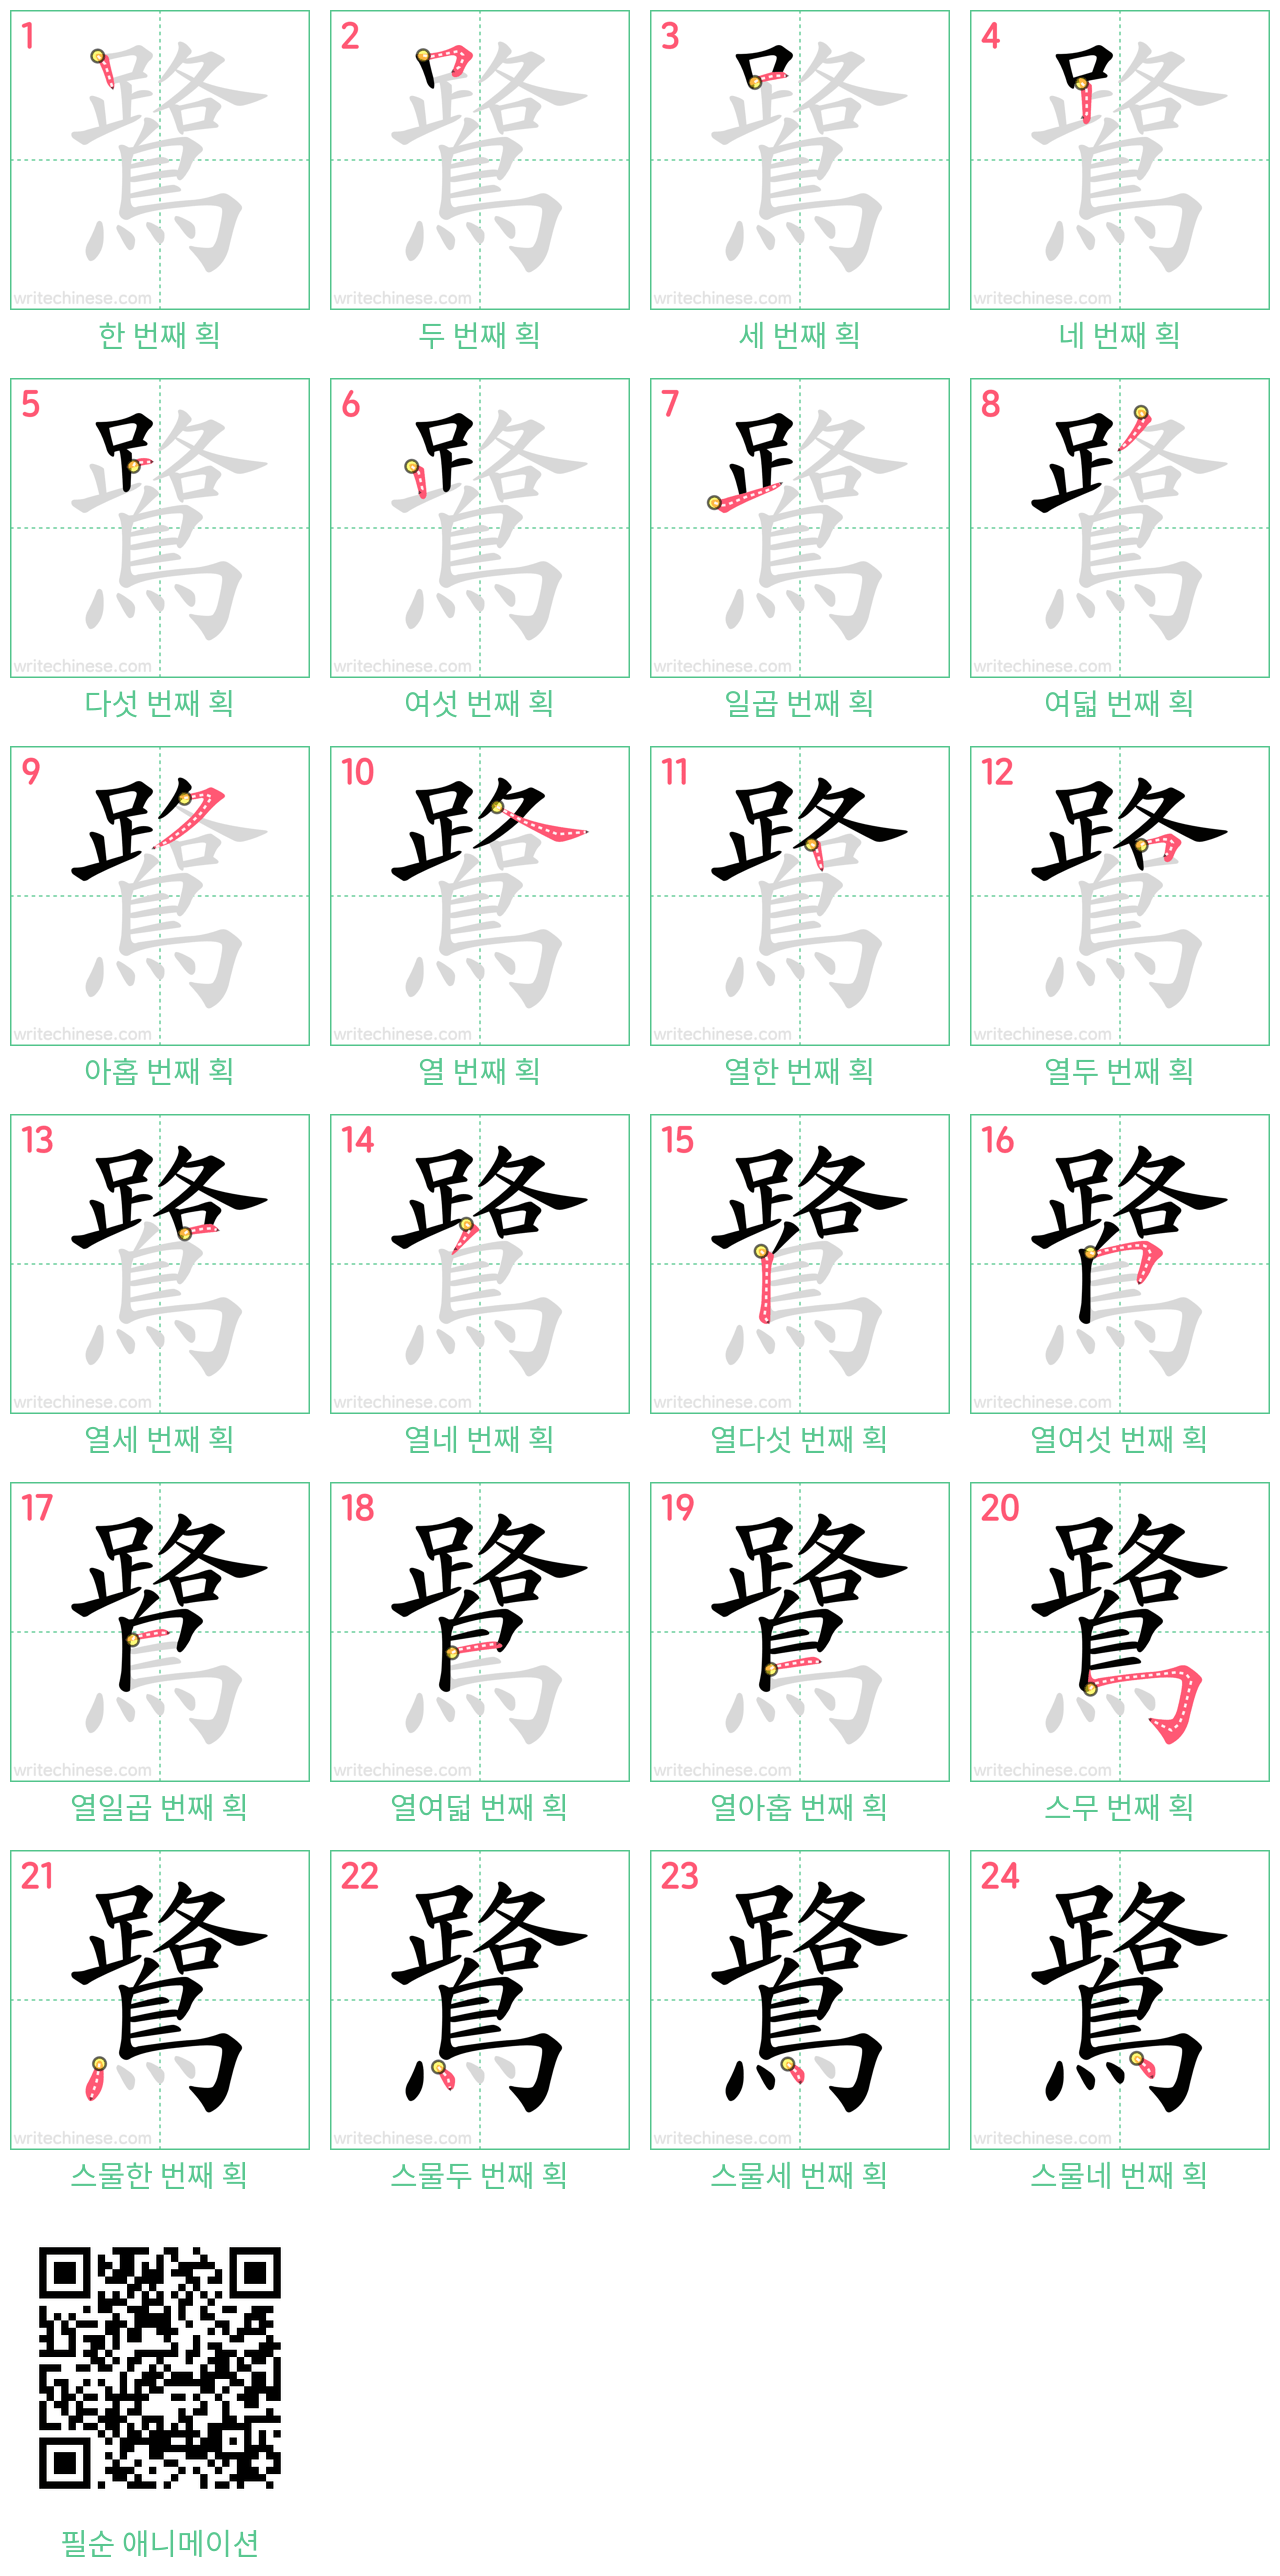 鷺 step-by-step stroke order diagrams